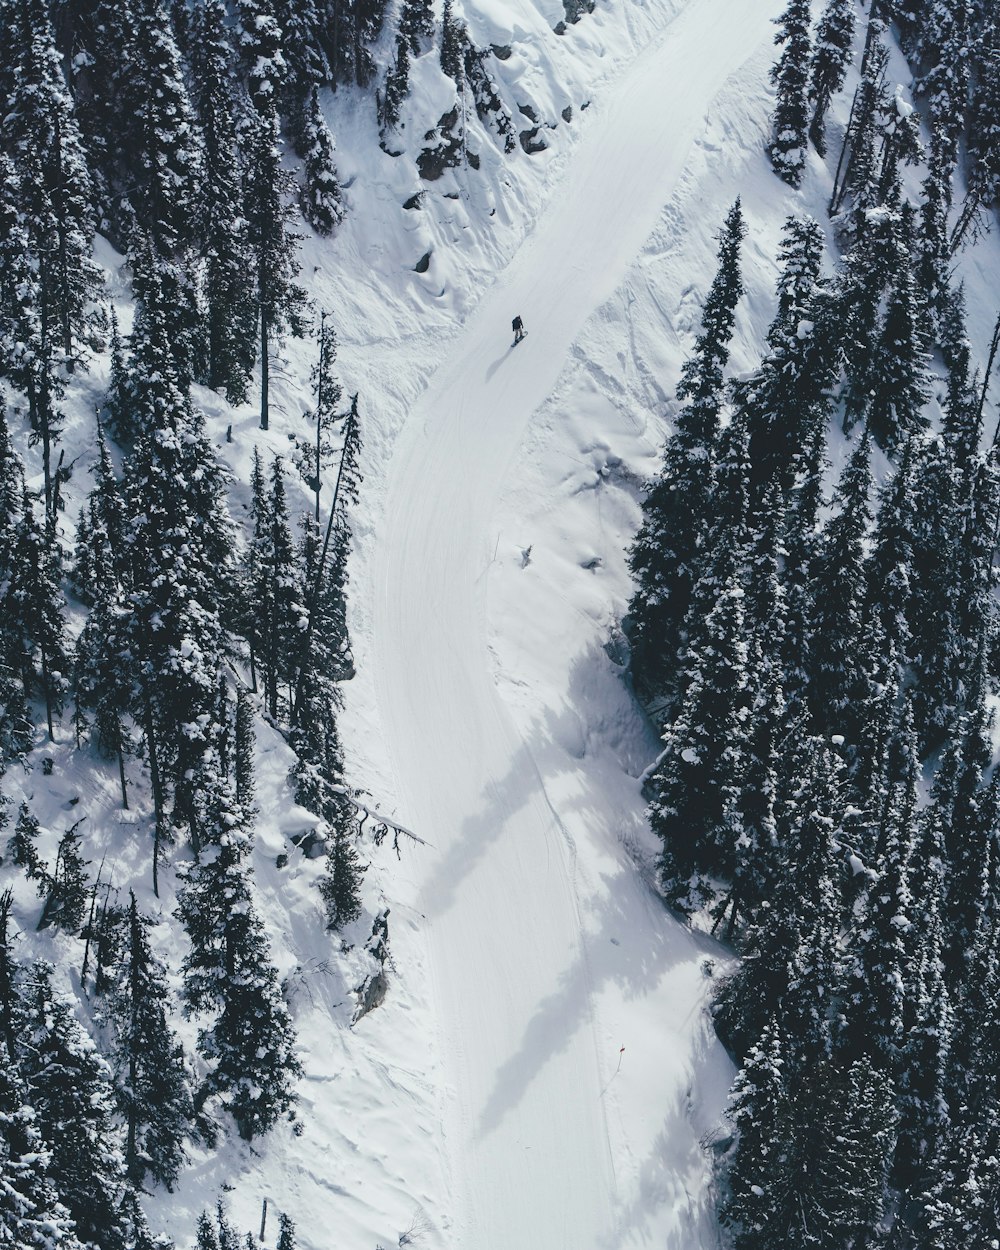 Photographie aérienne d’une personne skiant sur une montagne enneigée \